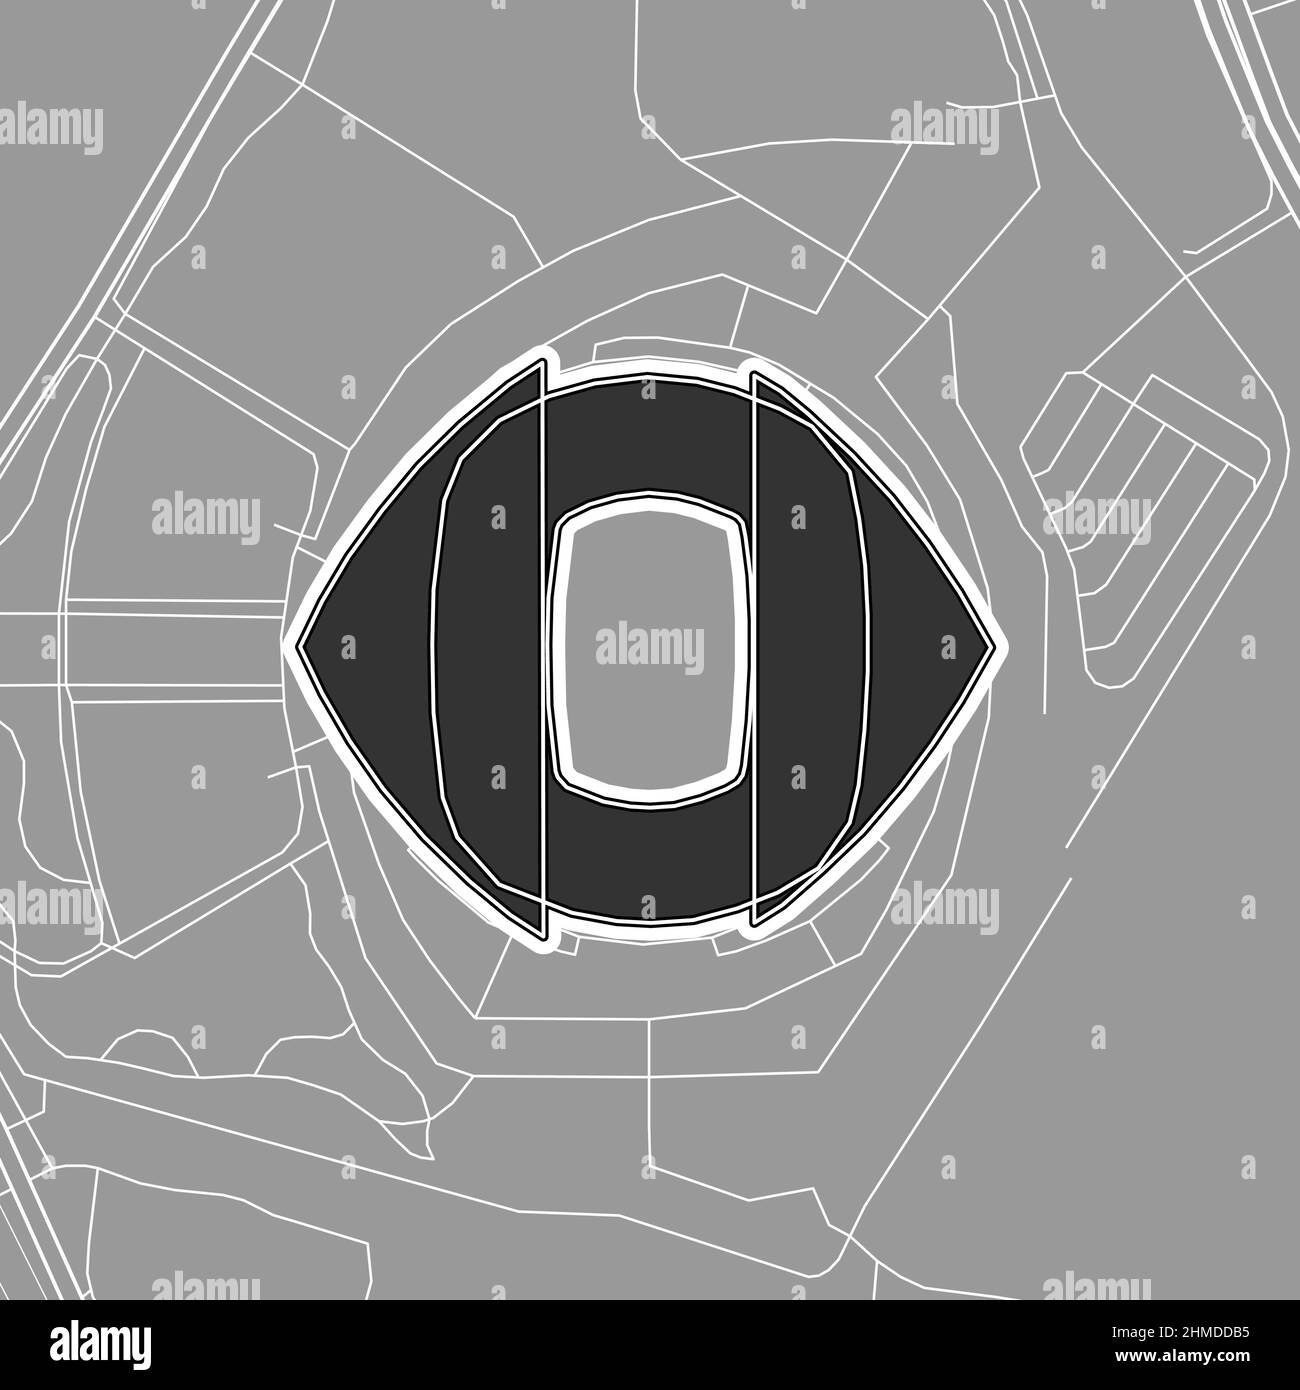 Saitama, stade de baseball MLB, carte vectorielle. La carte du statium de base-ball a été tracée avec des zones blanches et des lignes pour les routes principales, les routes latérales. Illustration de Vecteur